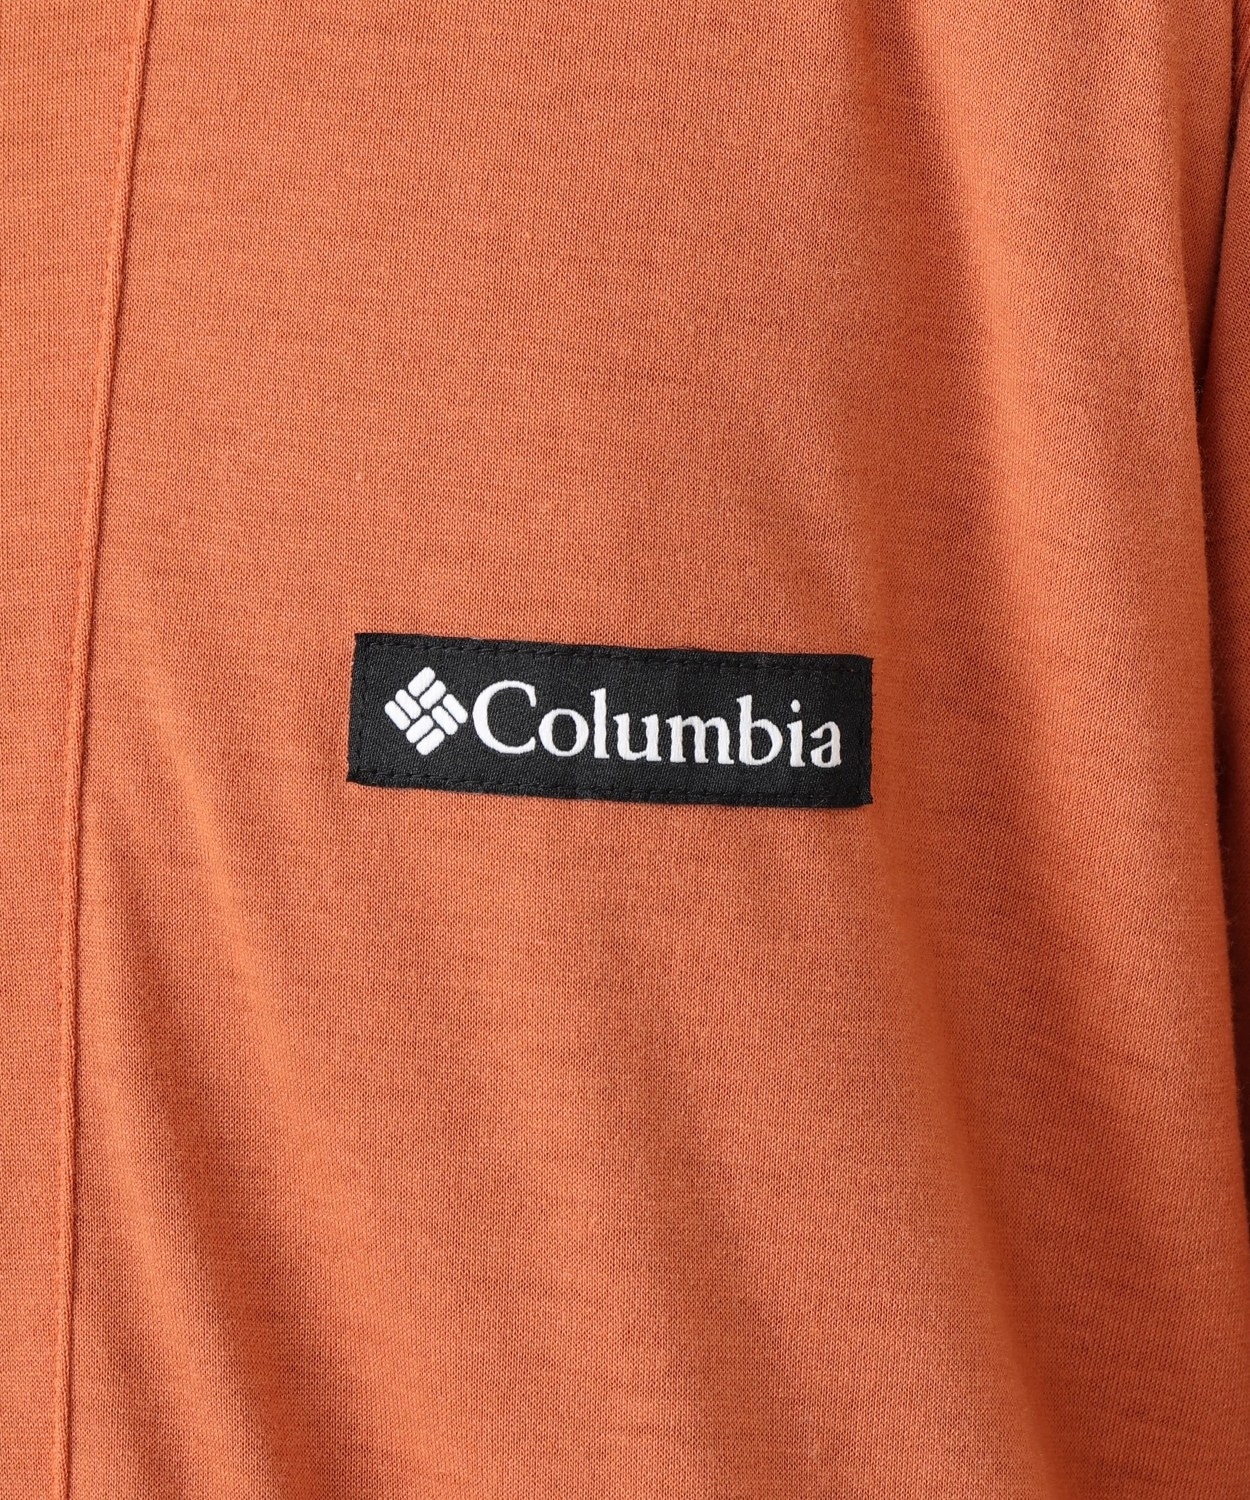 エンジョイマウンテンライフリバーシブルジャケット(S Black, Charcoal)│コロンビア(Columbia)公式通販サイト